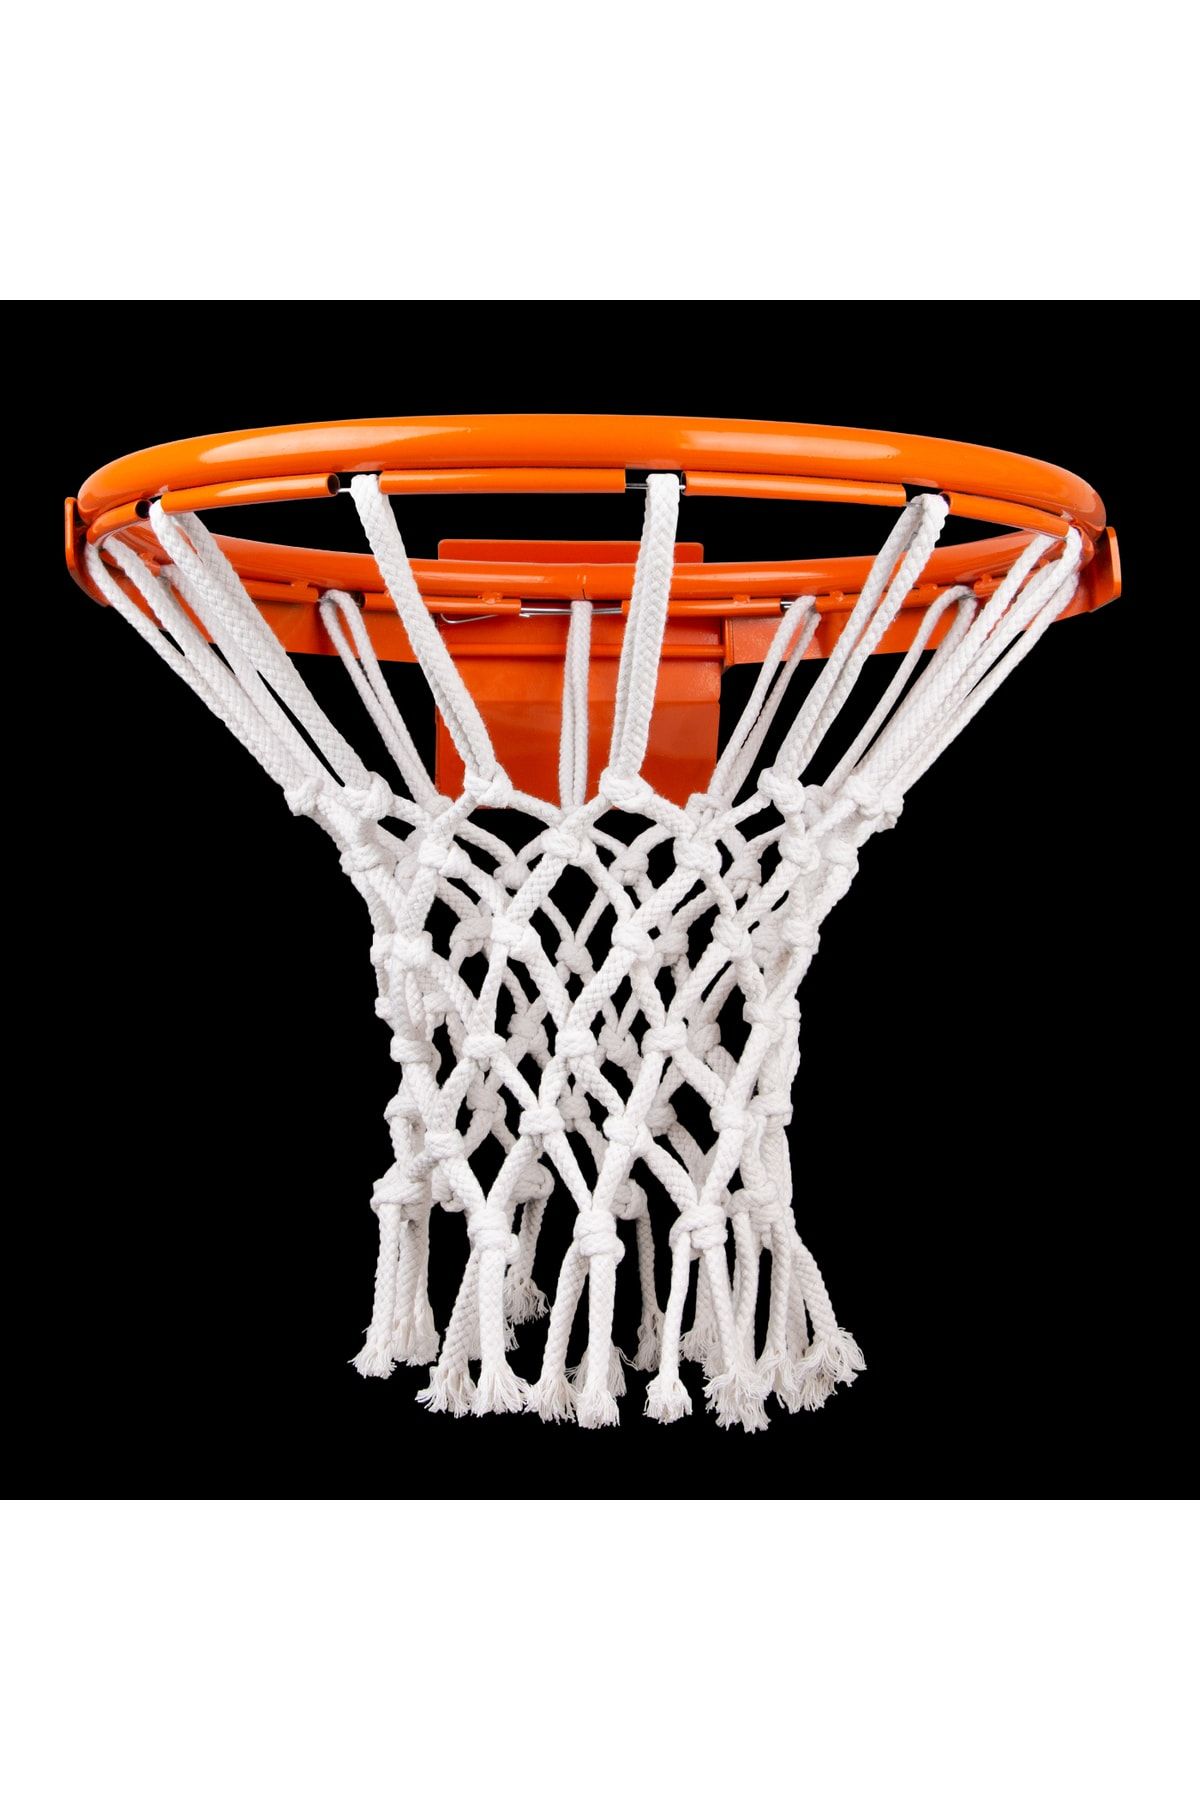 Nodes Basketbol Pota Filesi Ağı - Profesyonel - 6mm - Urgan - 2 Adet